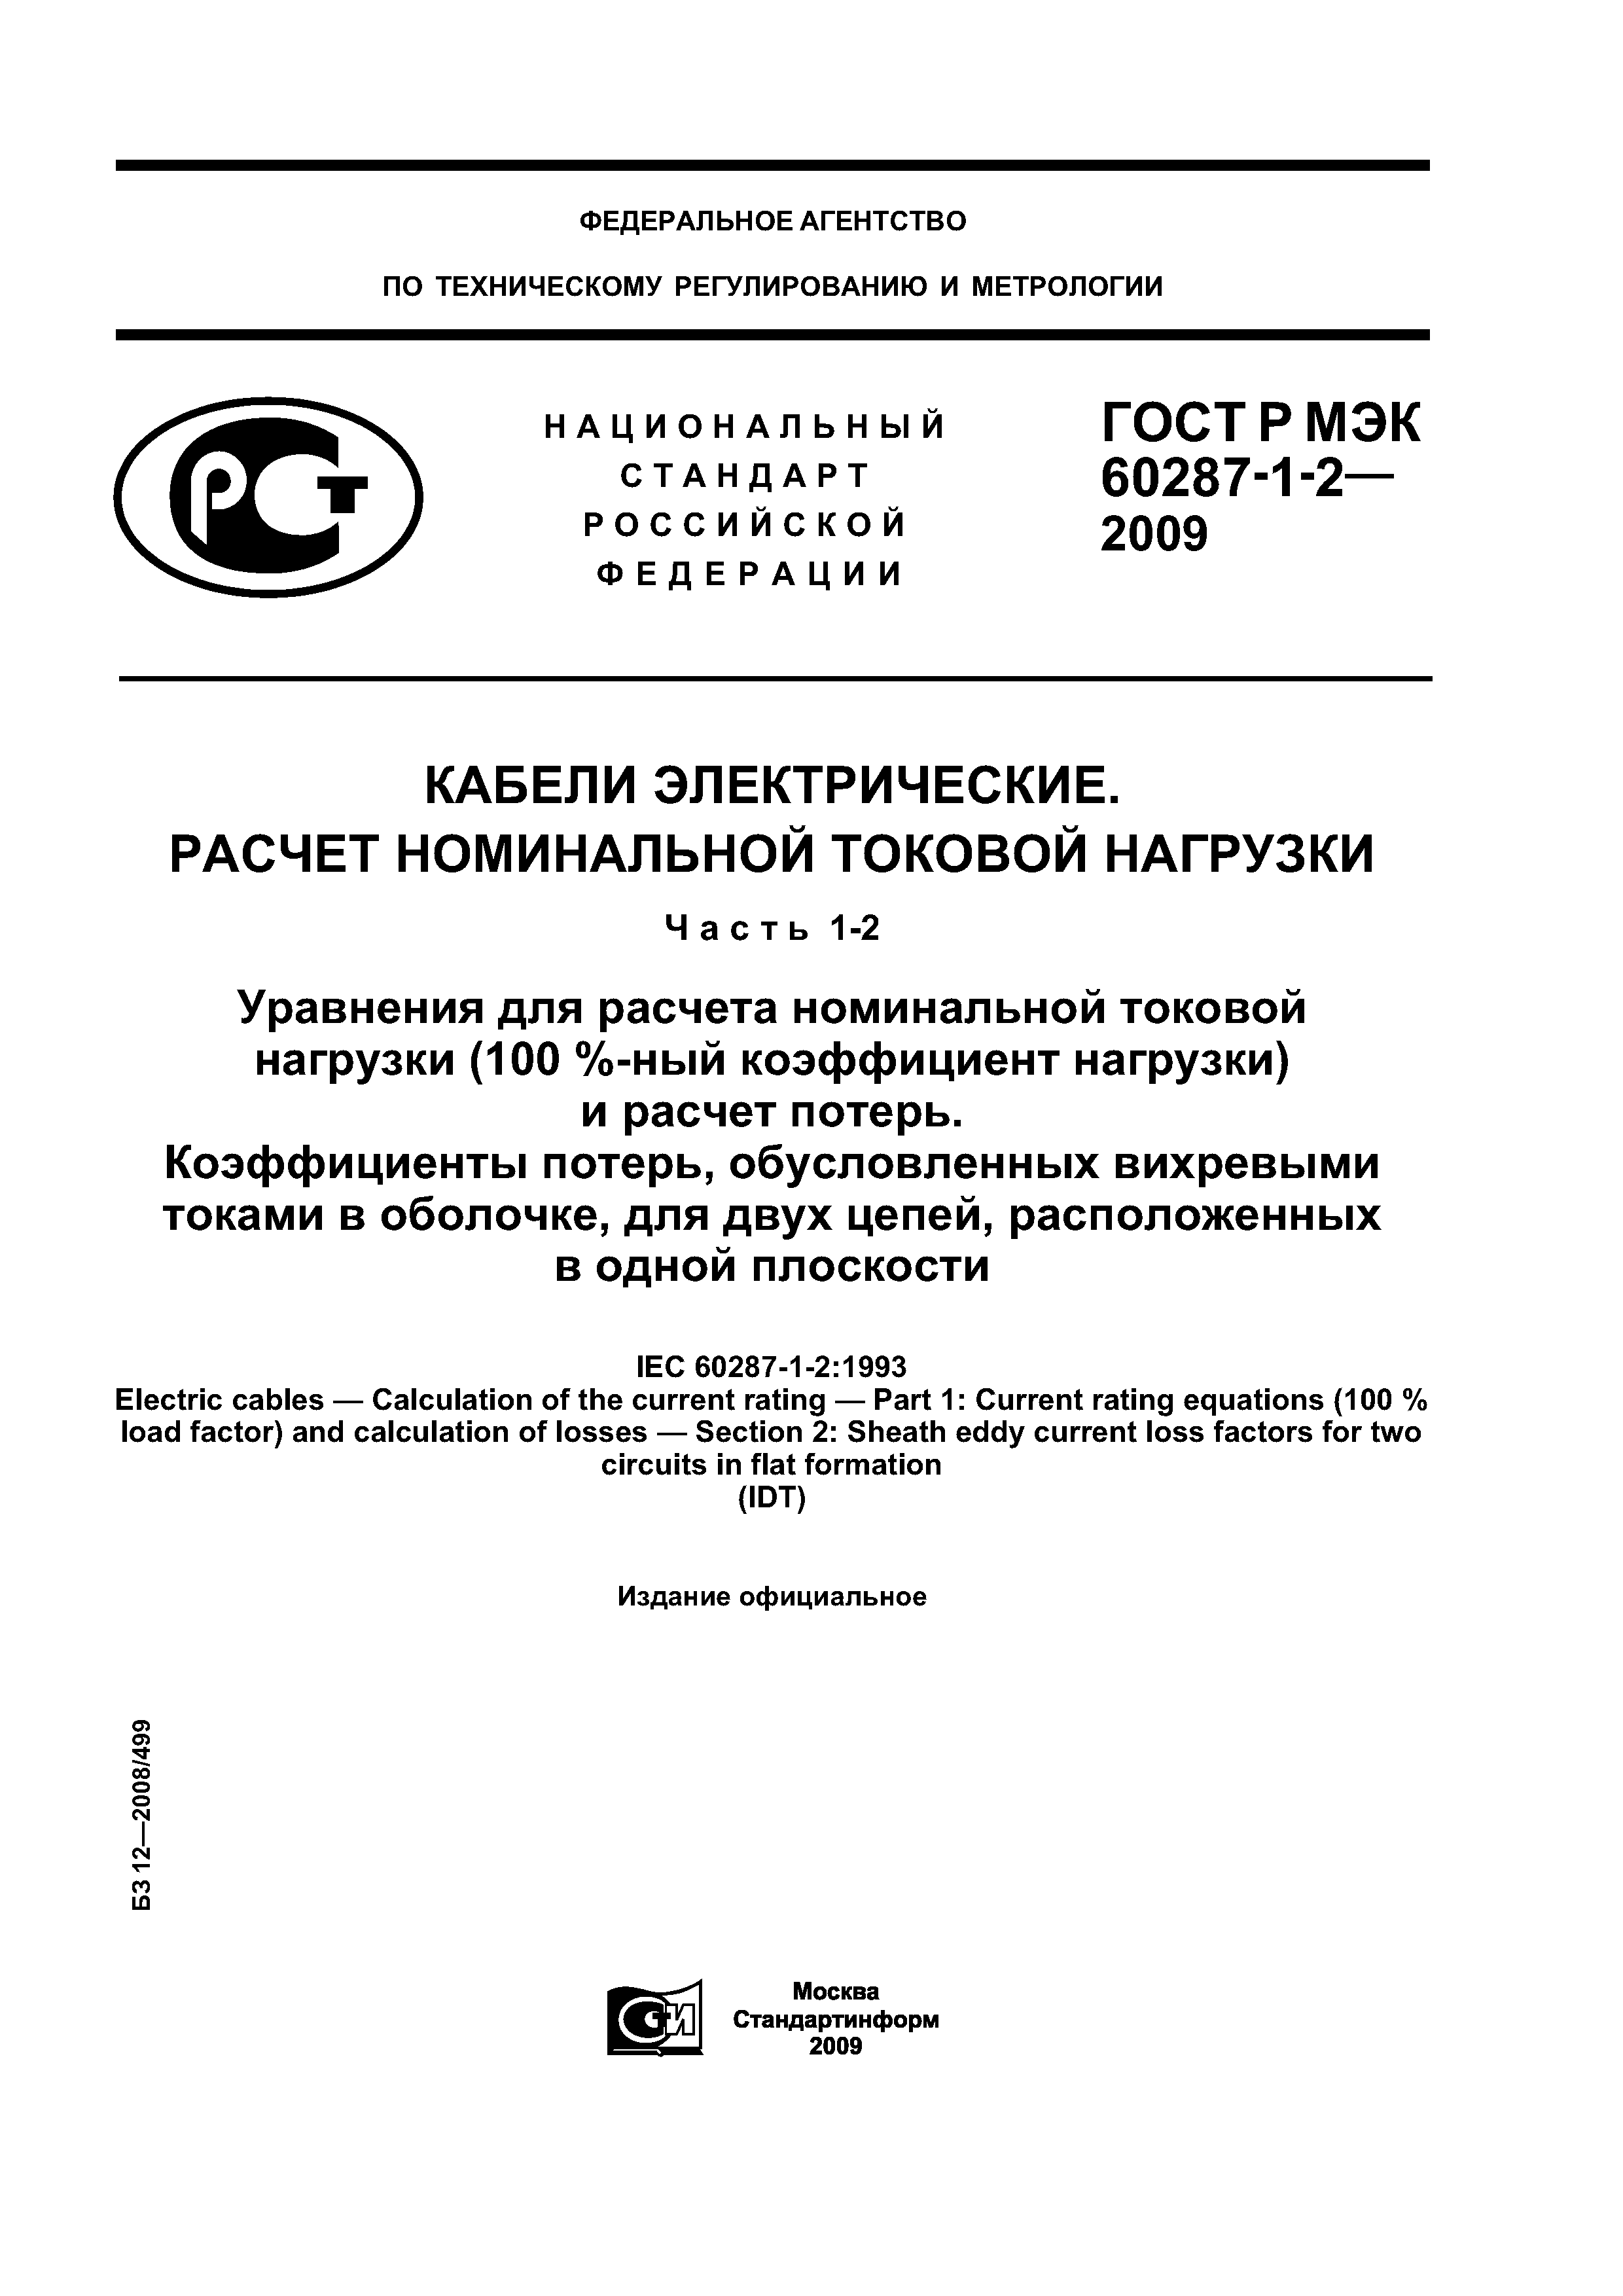 ГОСТ Р МЭК 60287-1-2-2009